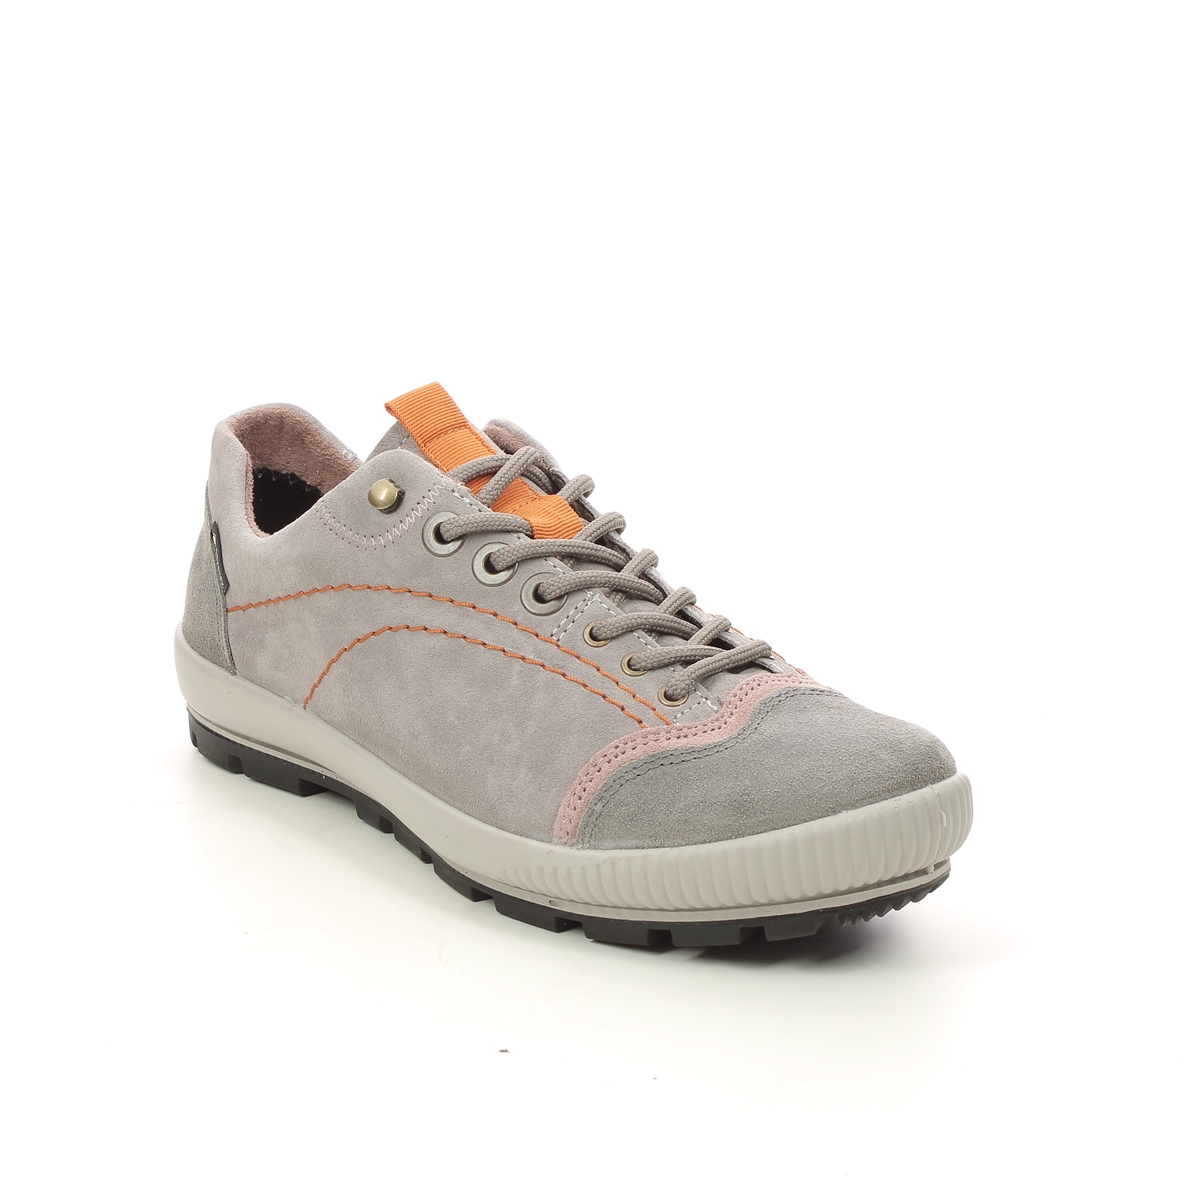 Legero Tanaro Trek Gtx Light Grey Suede Womens Walking Shoes 2000122-2900 In Size 5 In Plain Light Grey Suede